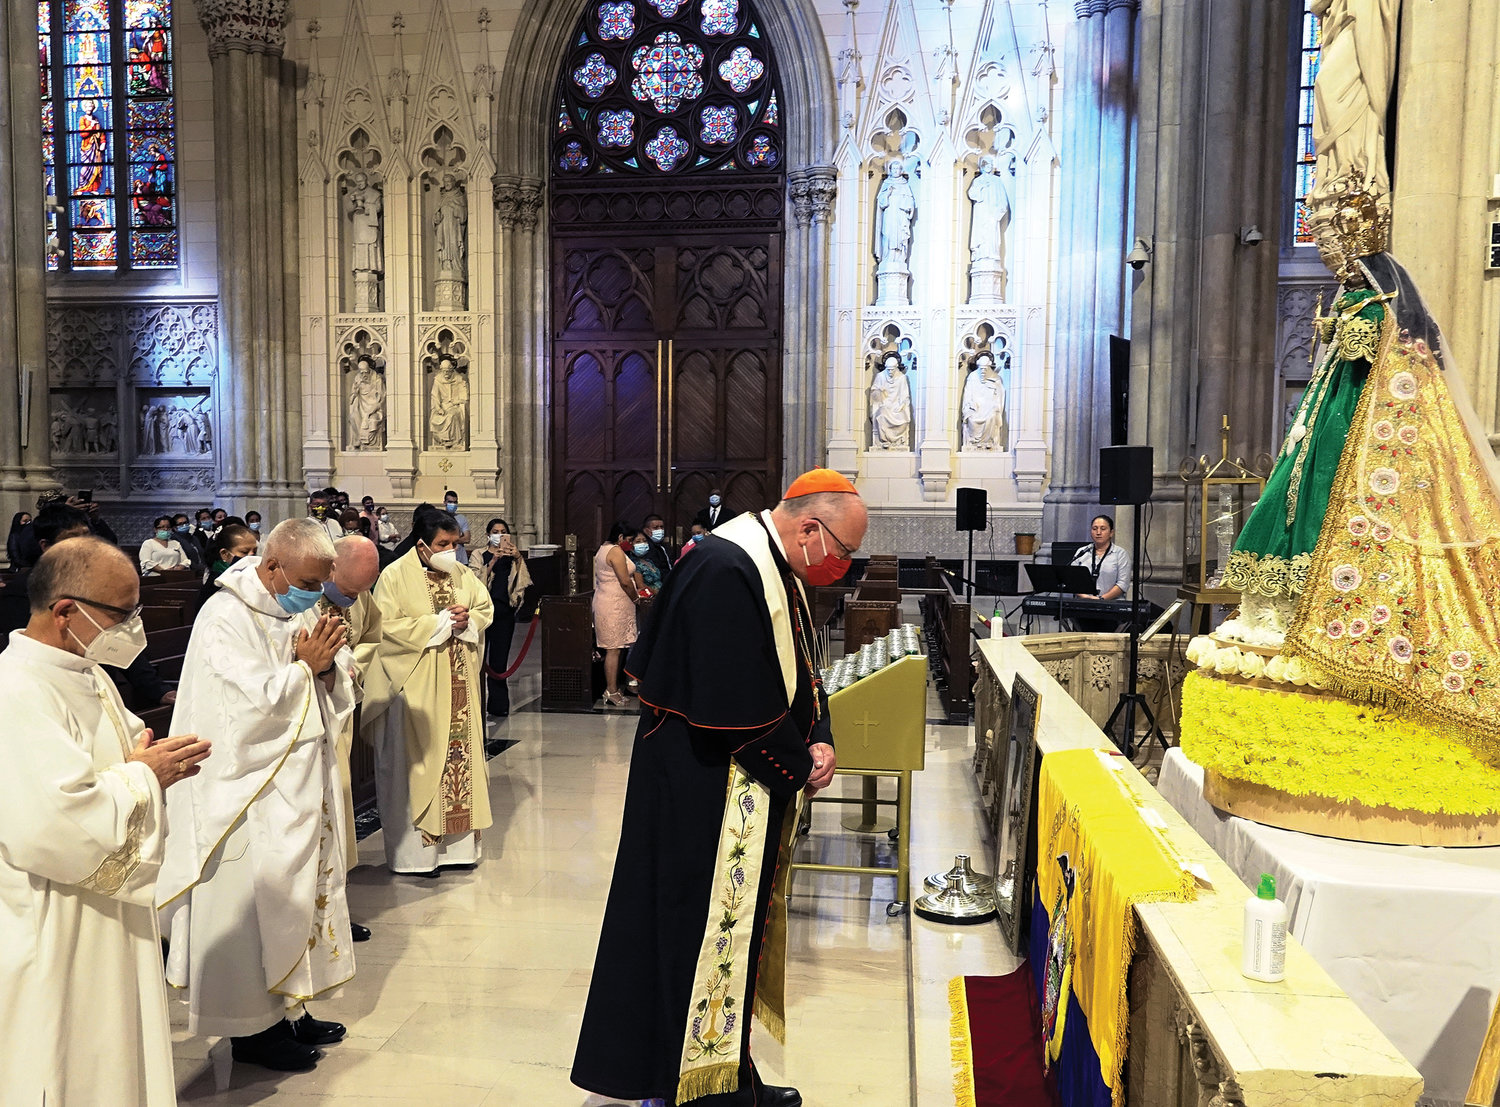 El cardenal Dolan y otros miembros del clero oran en silencio ante una estatua de Nuestra Señora de El Cisne en la Catedral de San Patricio del 27 de septiembre durante la misa anual celebrada en honor a la patrona de Ecuador.